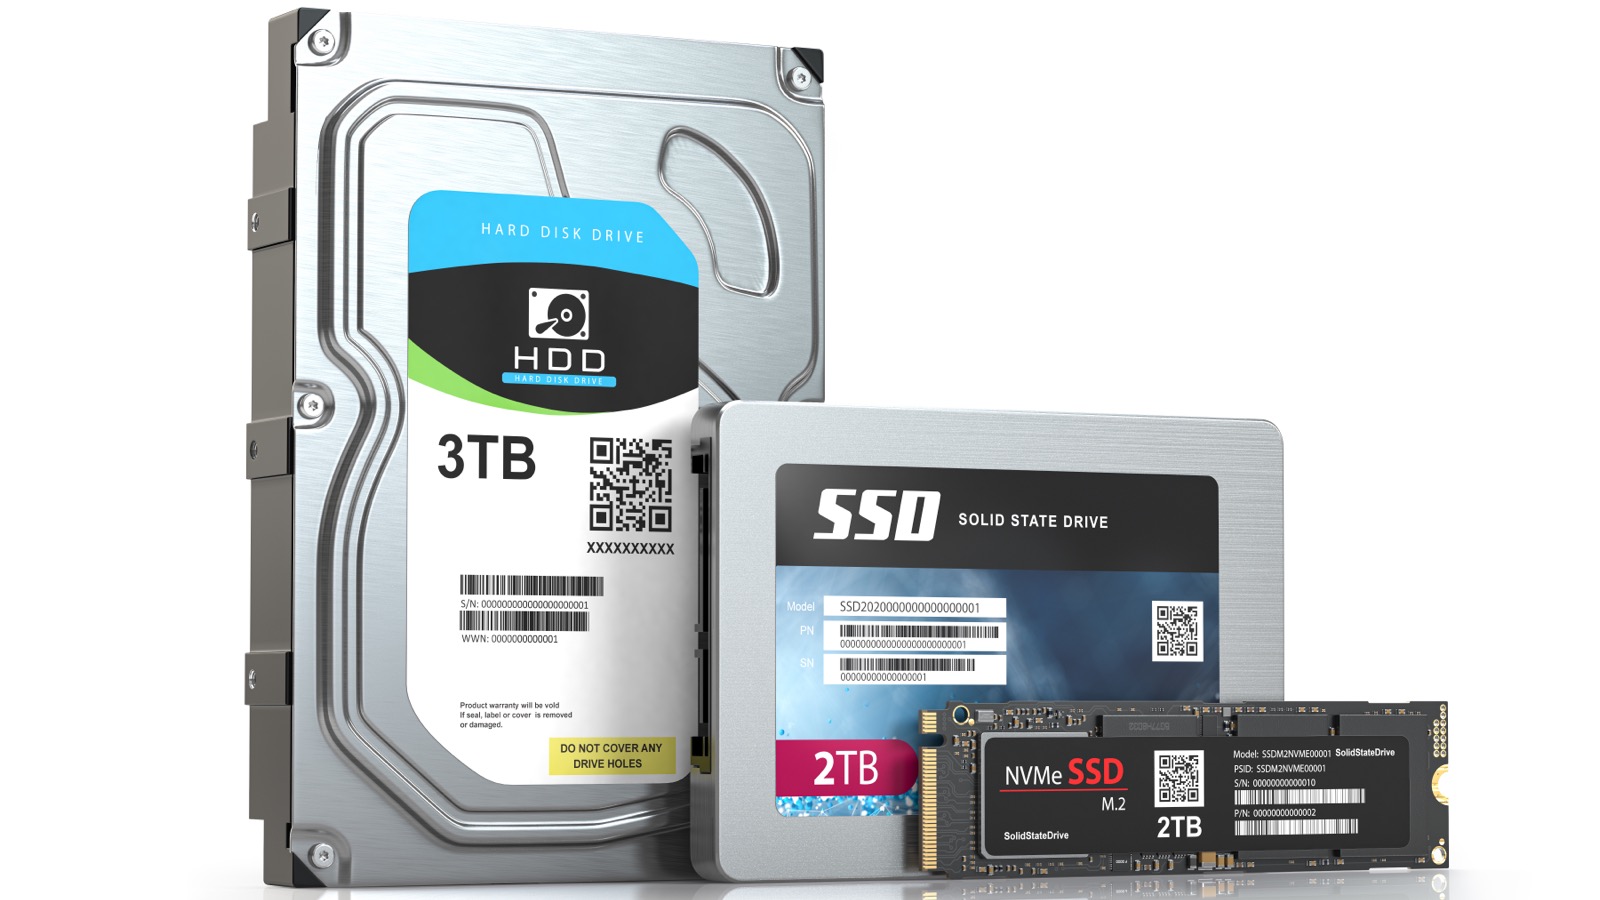 SSD SATA : Quel modèle de disque choisir ? - Le Parisien